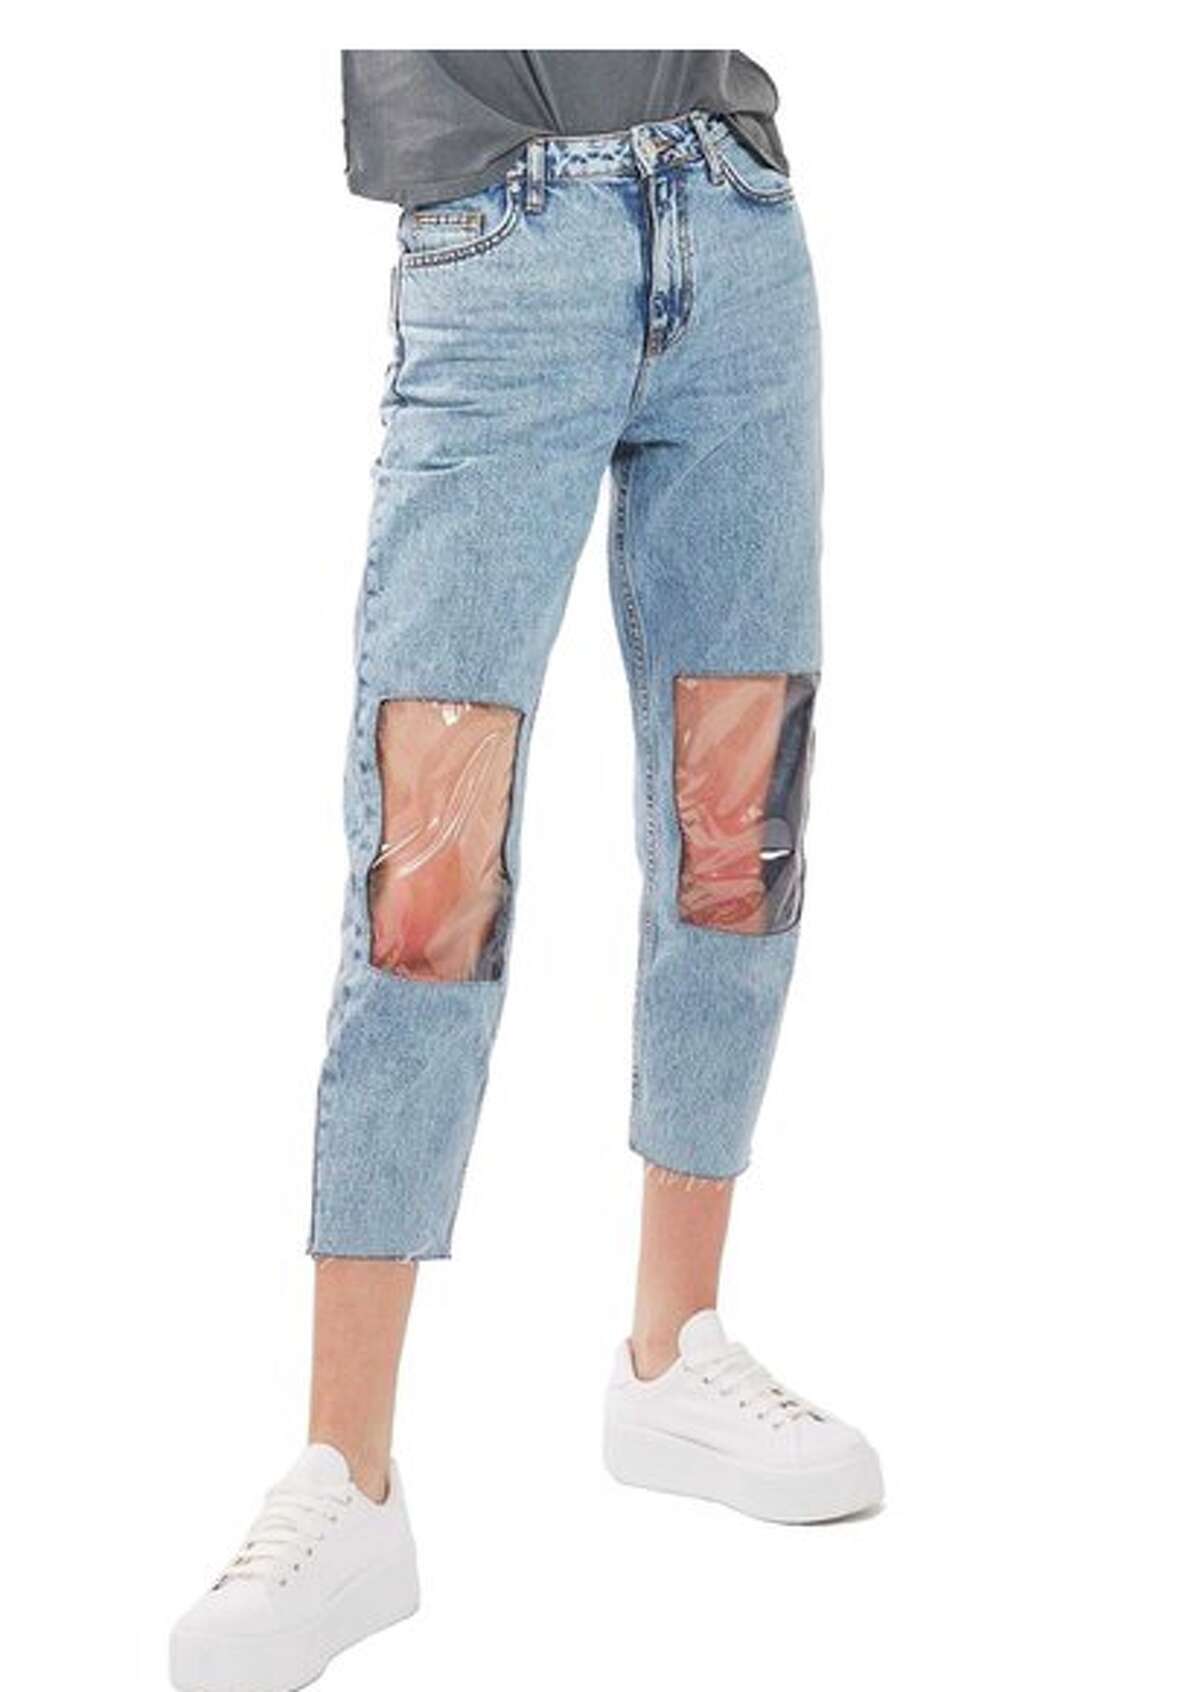 jeans plastic knees